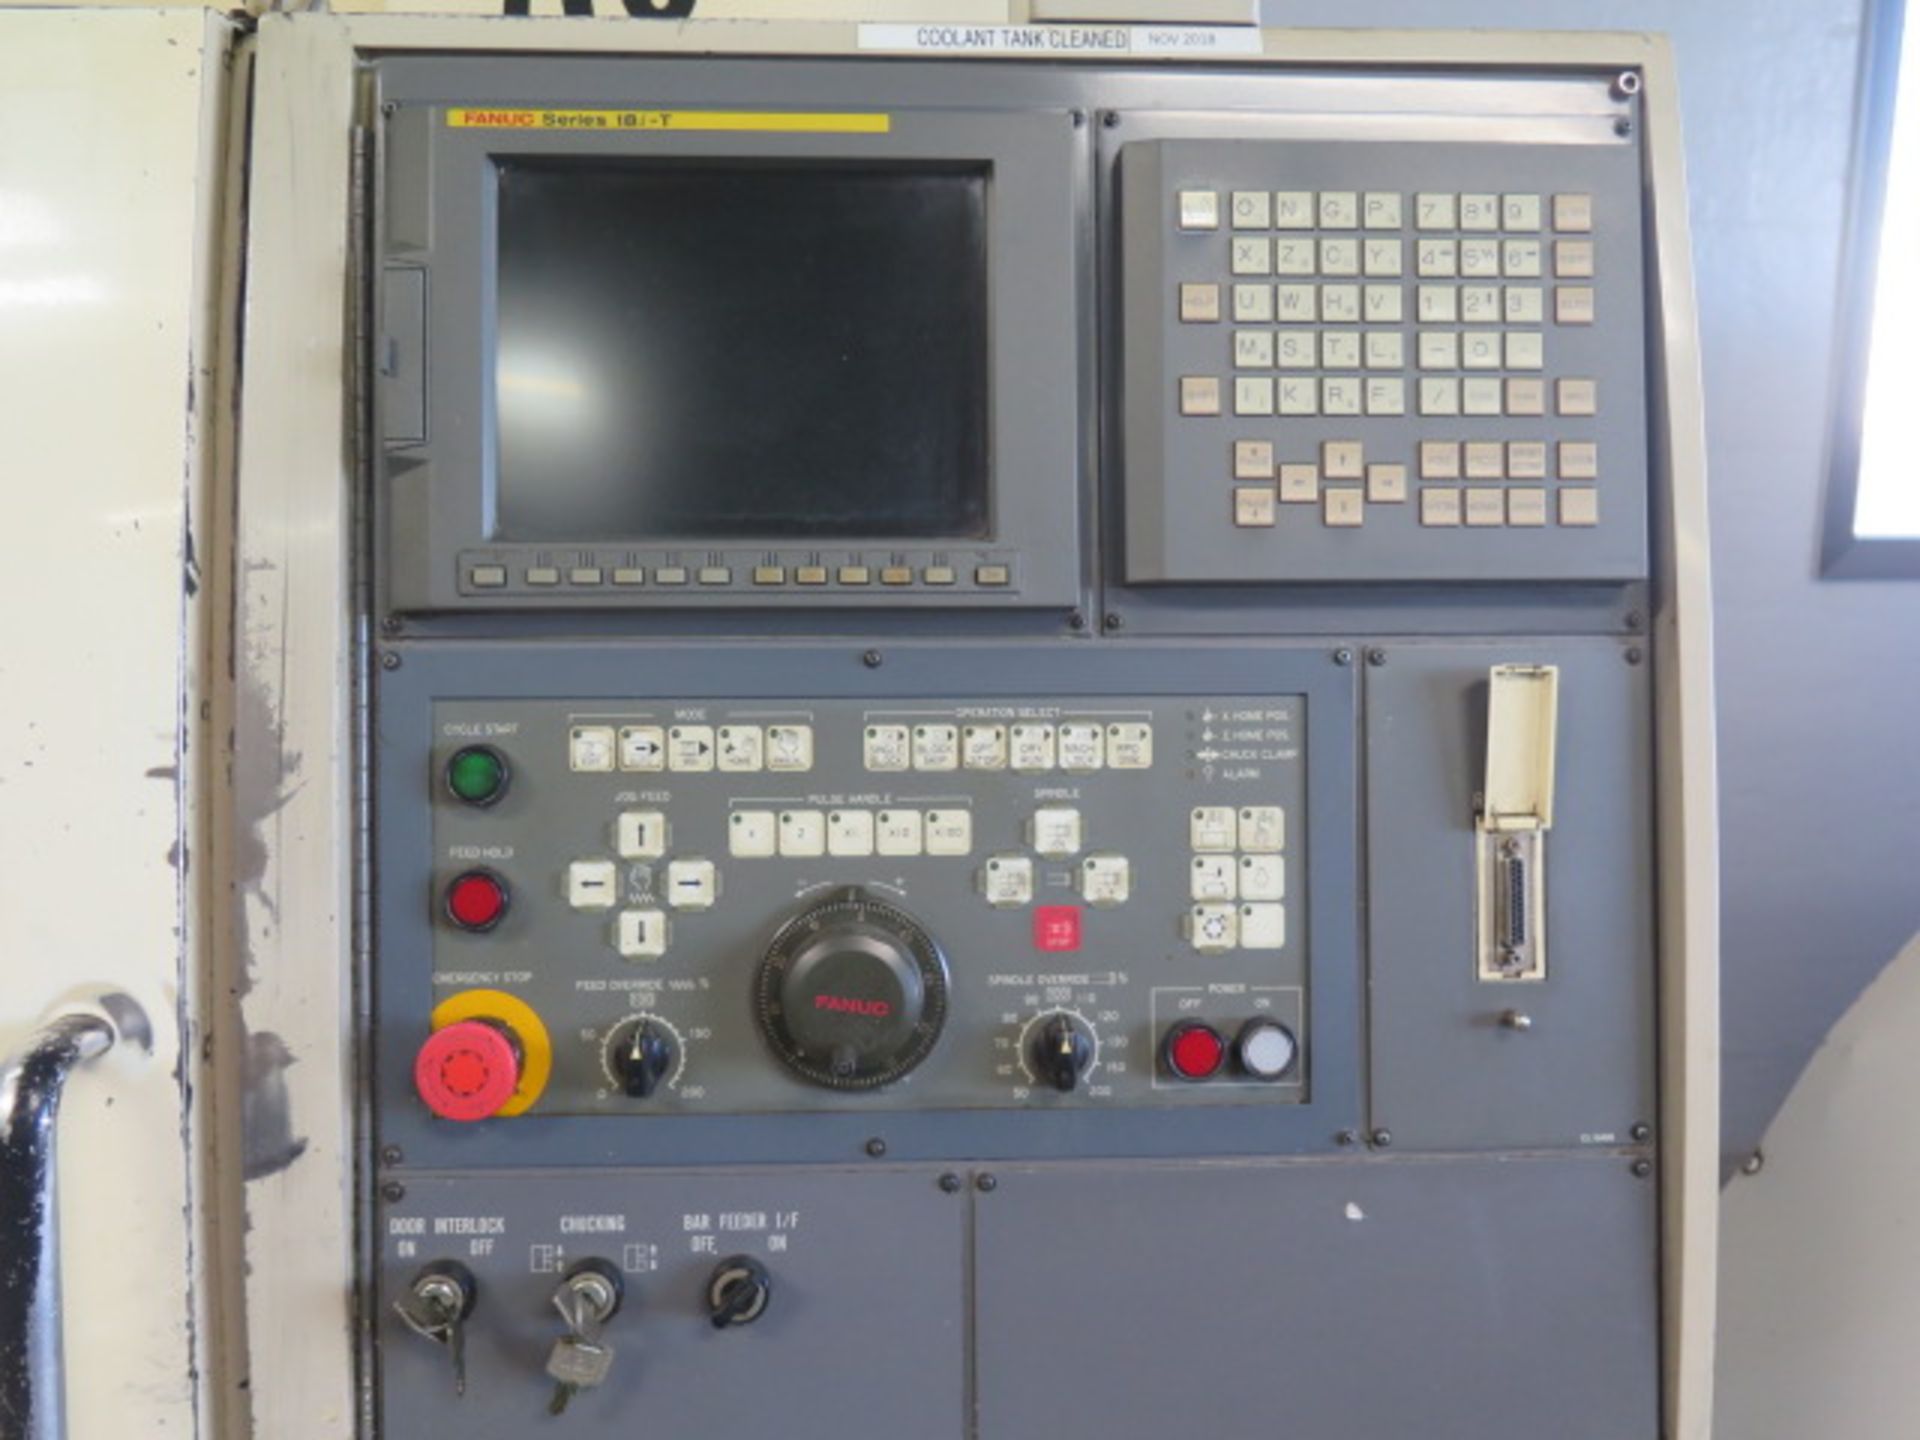 Okuma & Howa HL-20 CNC Turning Center s/n 9035 w/ Fanuc Series 18i-T Controls, 12-Station Turret, - Image 6 of 23